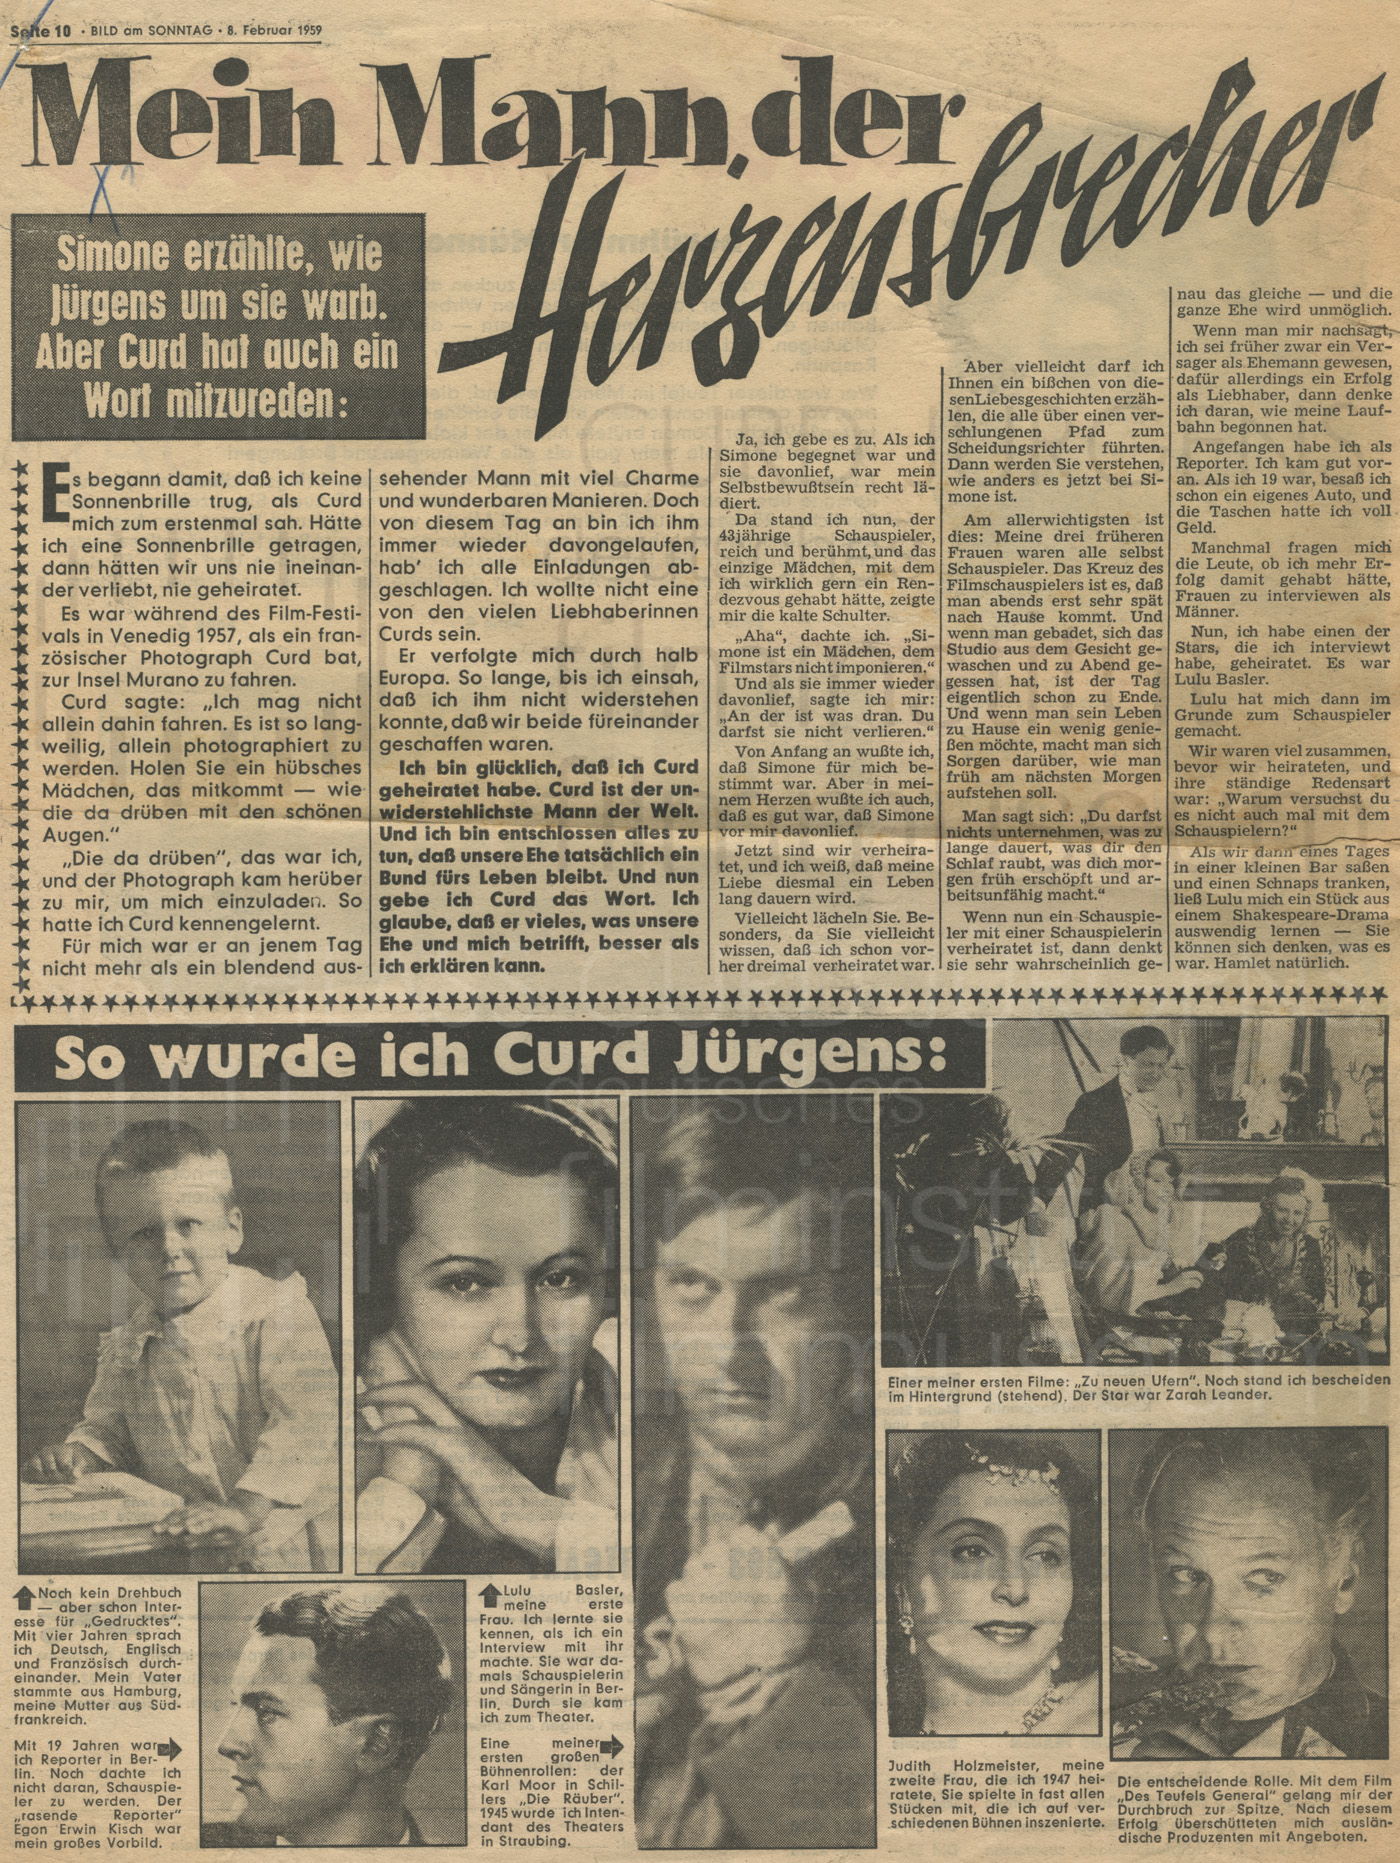 BILD am SONNTAG: "Mein Mann, der Herzensbrecher", 8.2.1959